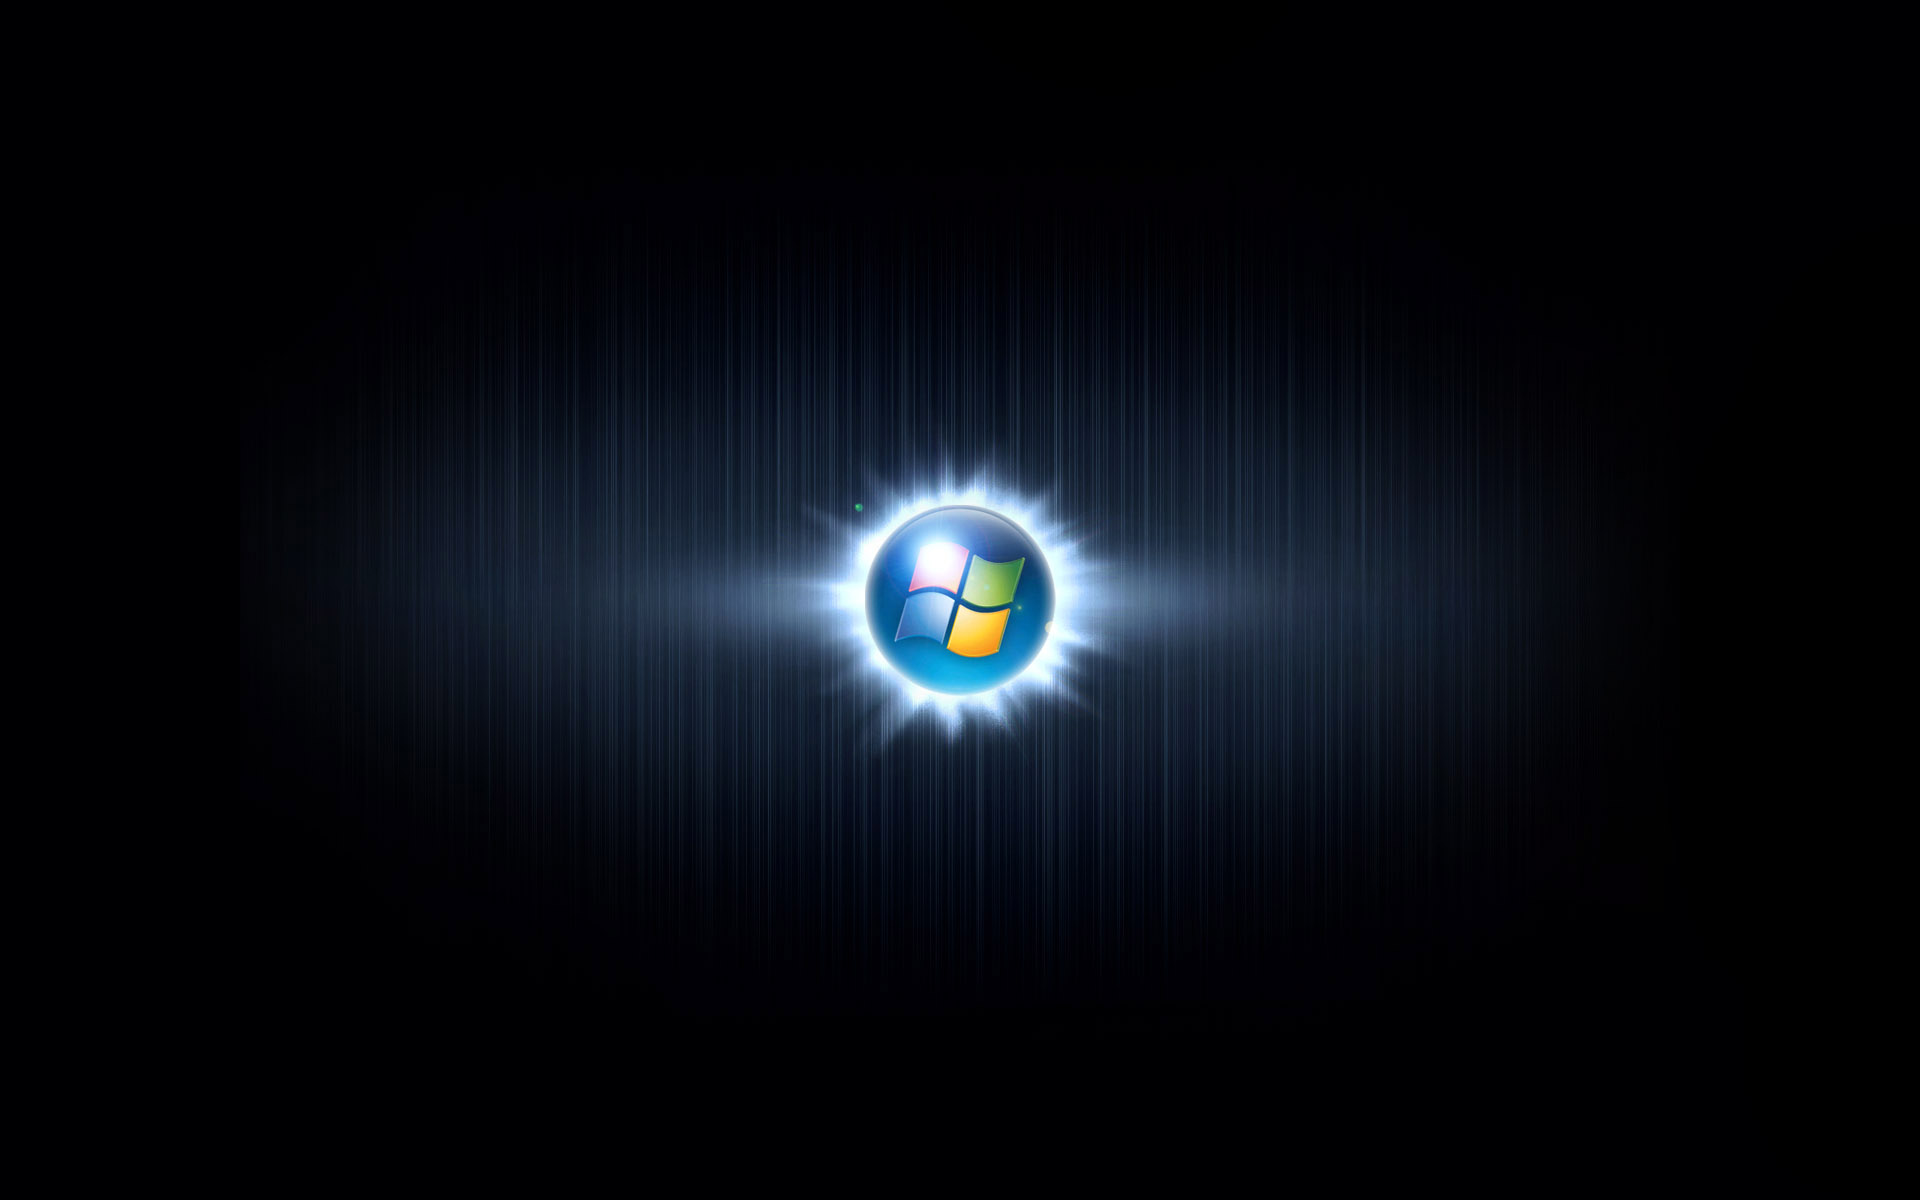 [49+] Desktop Live Wallpaper Windows 10 - WallpaperSafari